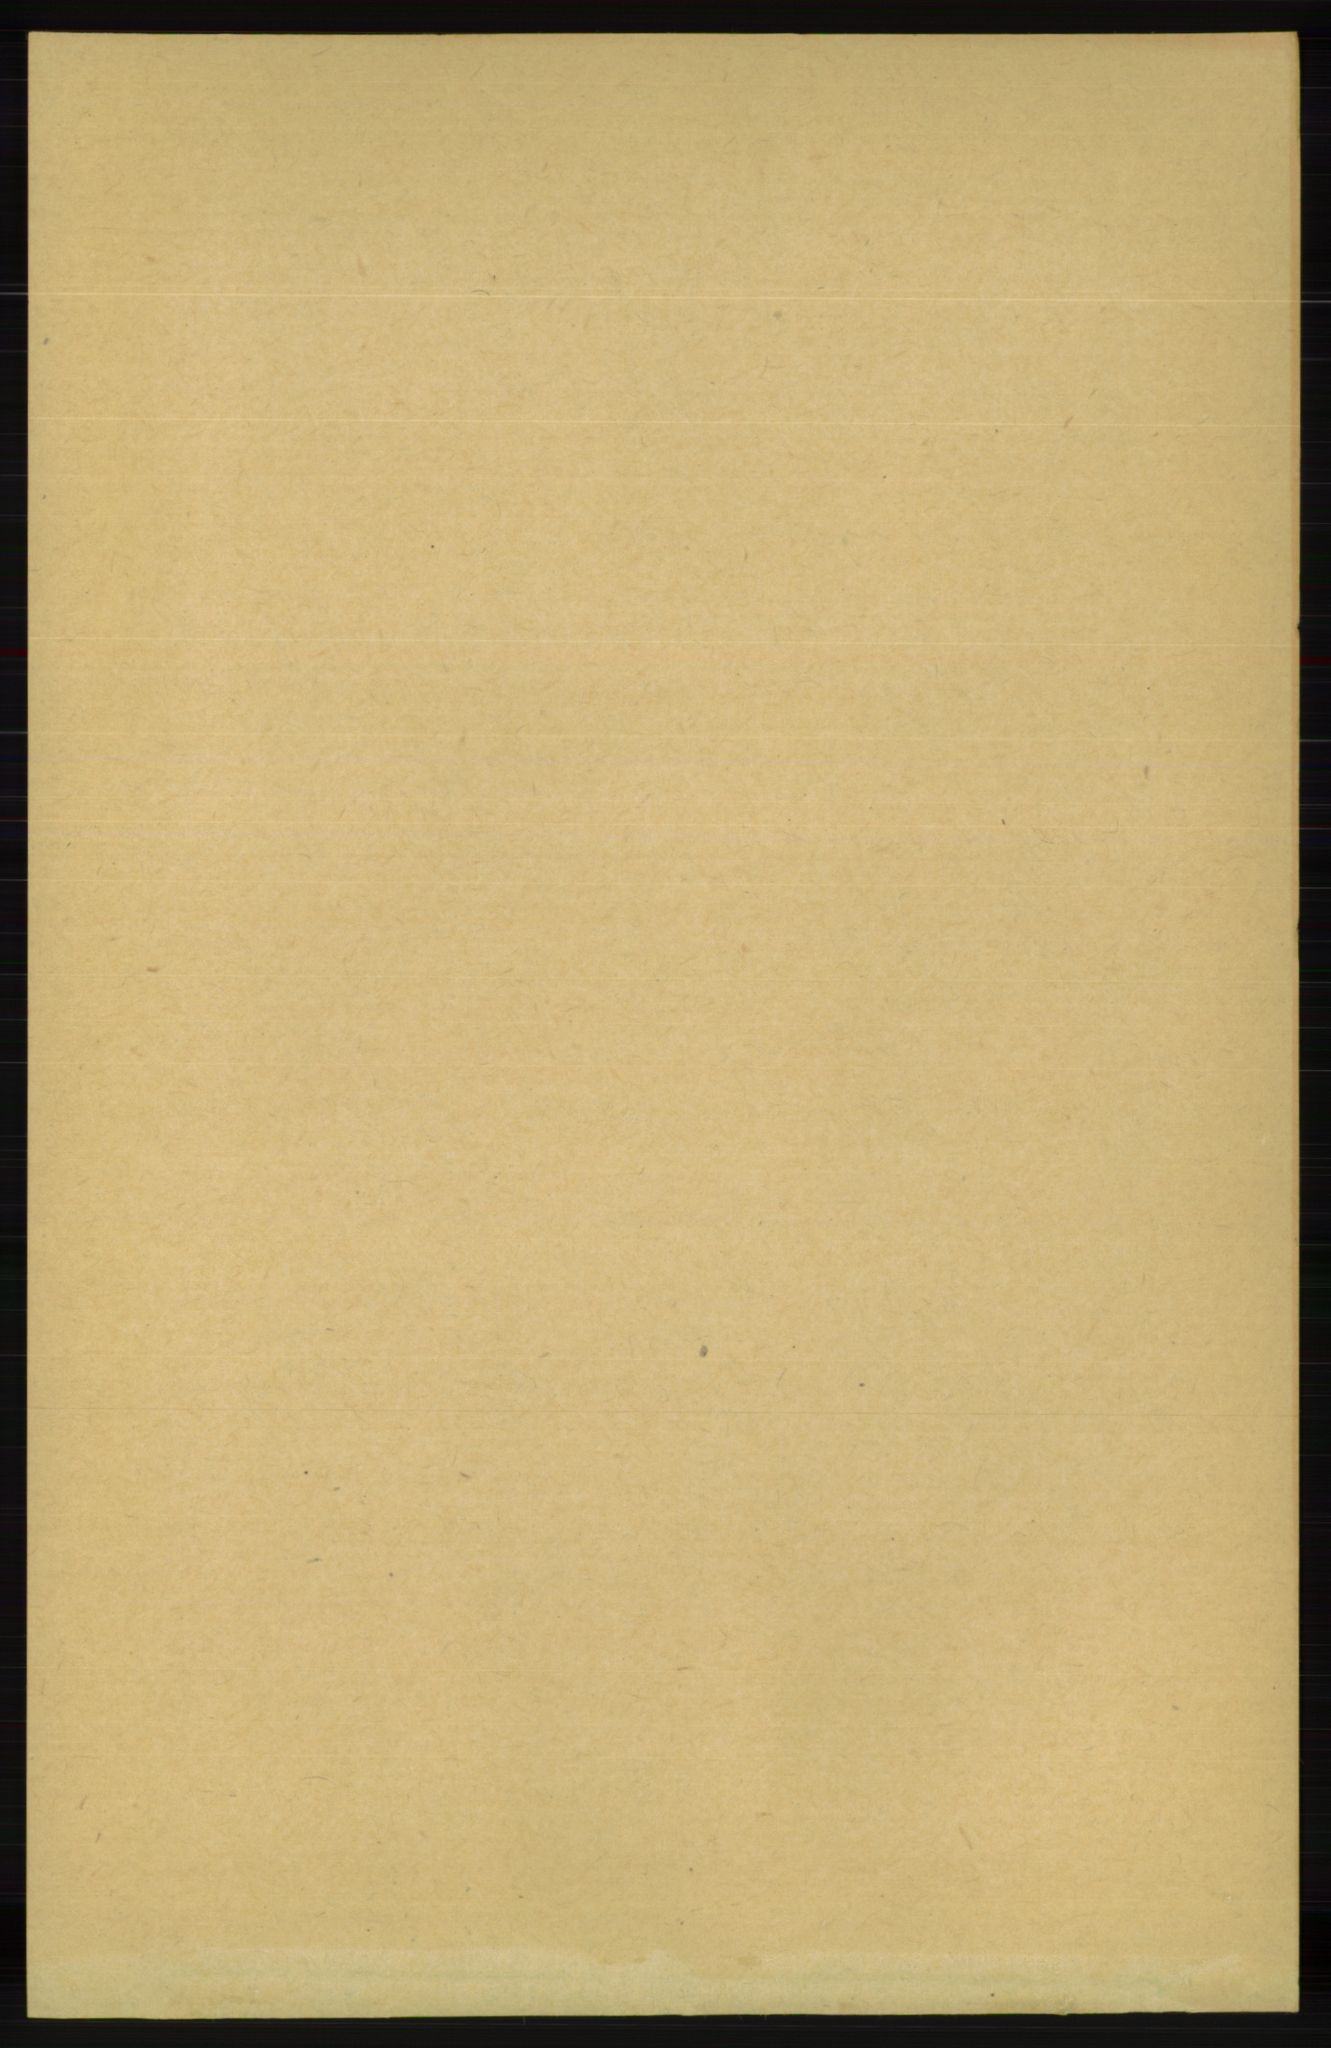 RA, Folketelling 1891 for 1039 Herad herred, 1891, s. 85